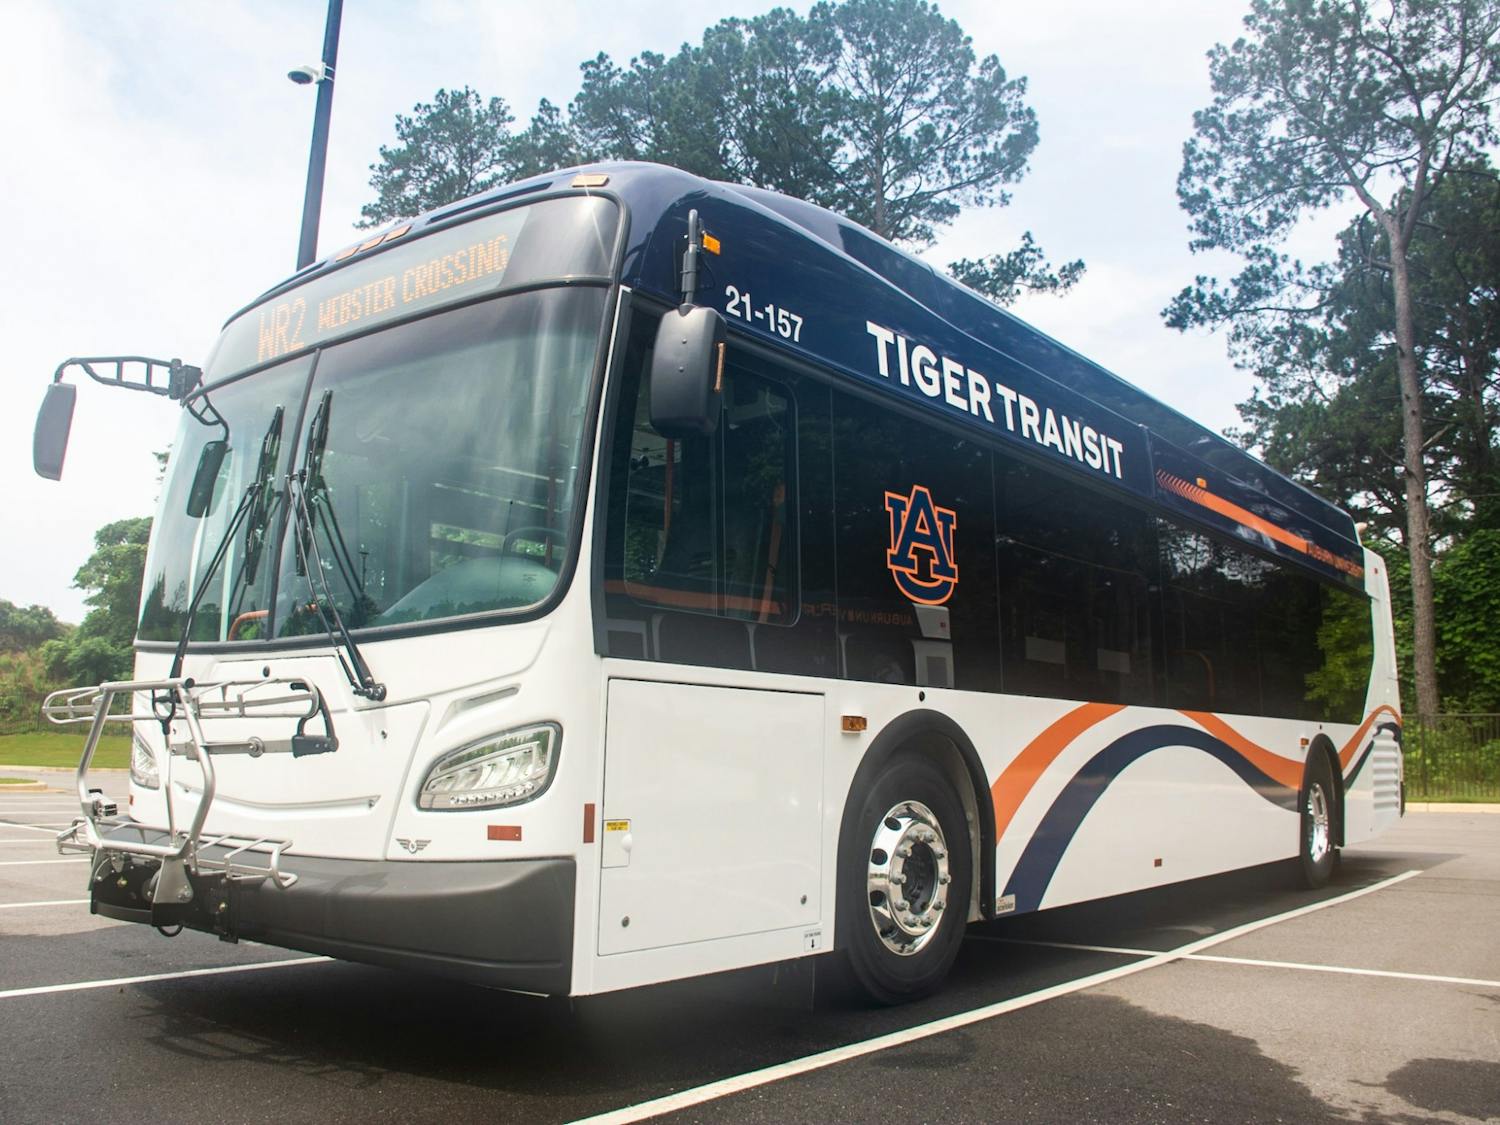 New Tiger Transit Buses